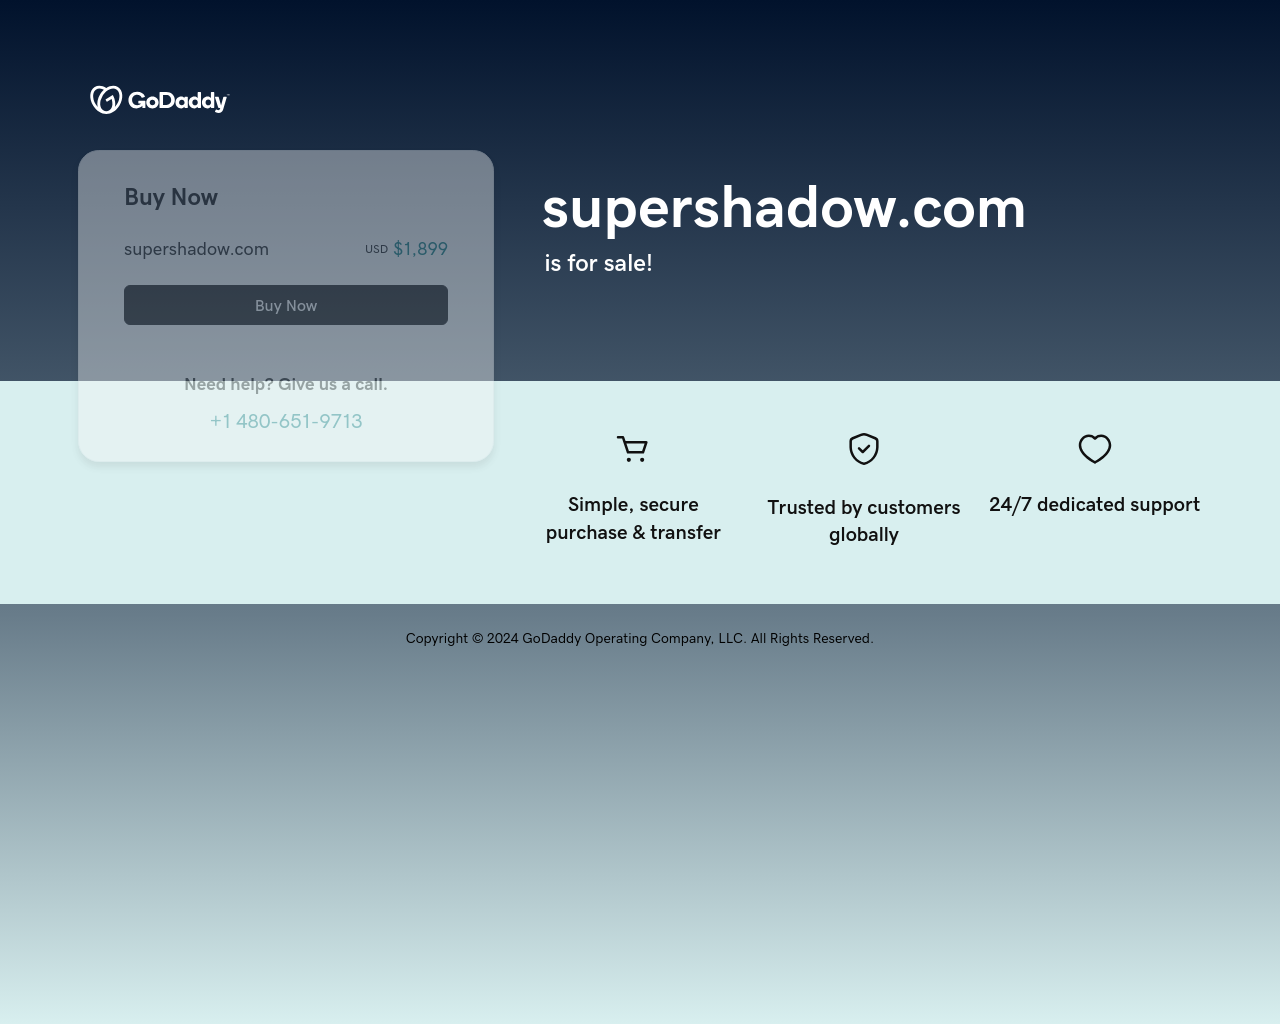 supershadow.com